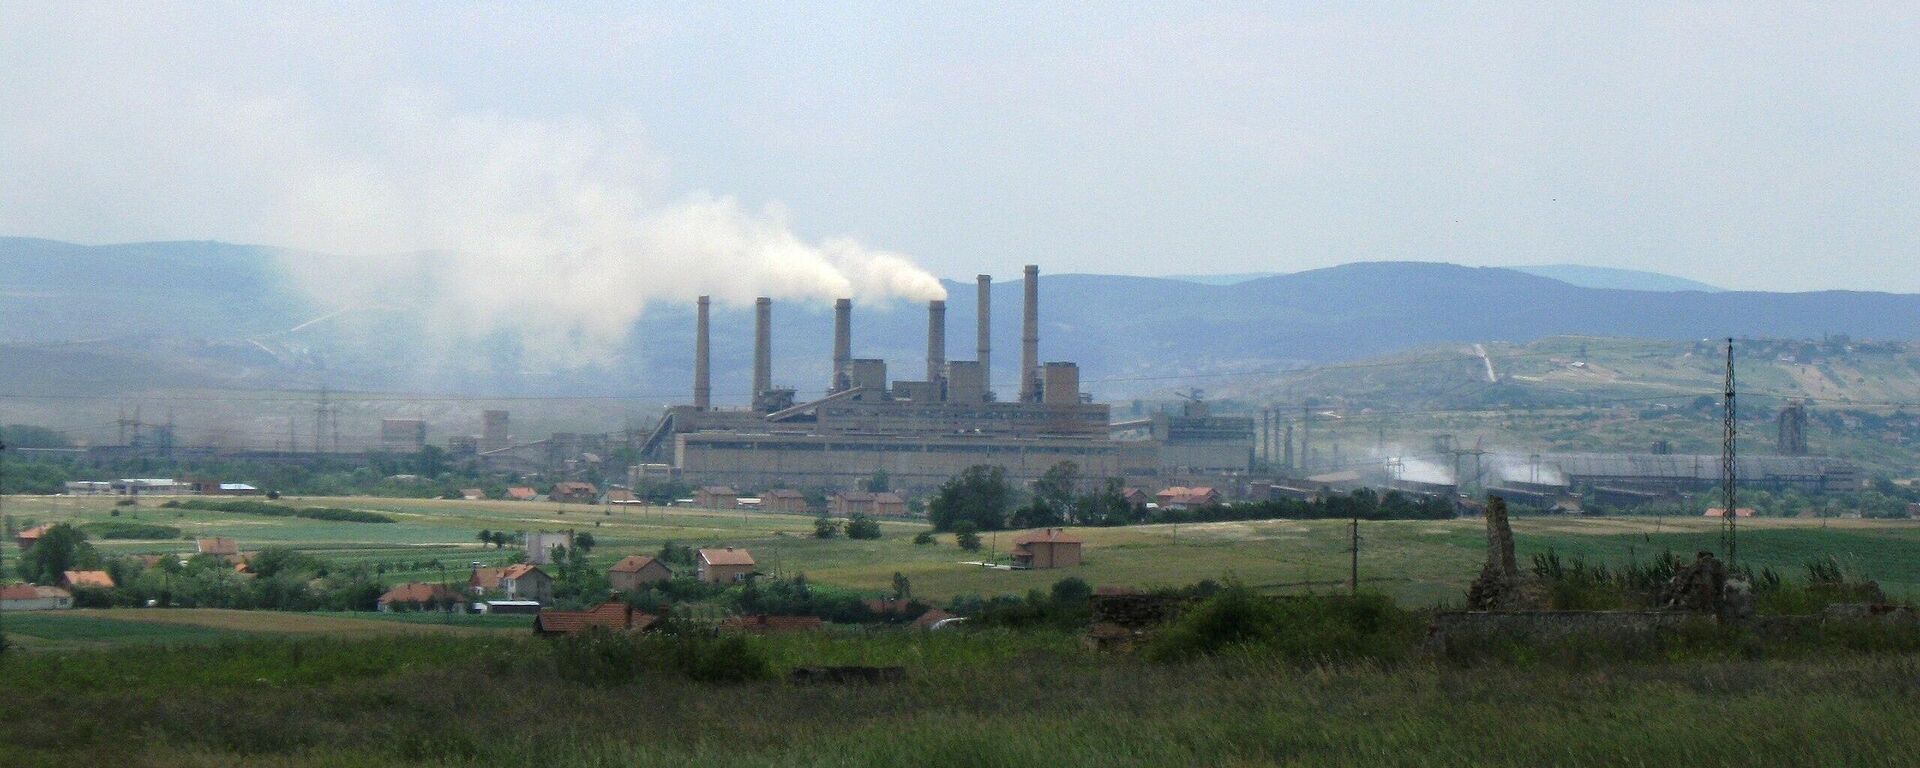 Termoelektrana Kosovo A u Obiliću na Kosovu i Metohiji - Sputnik Srbija, 1920, 29.12.2021